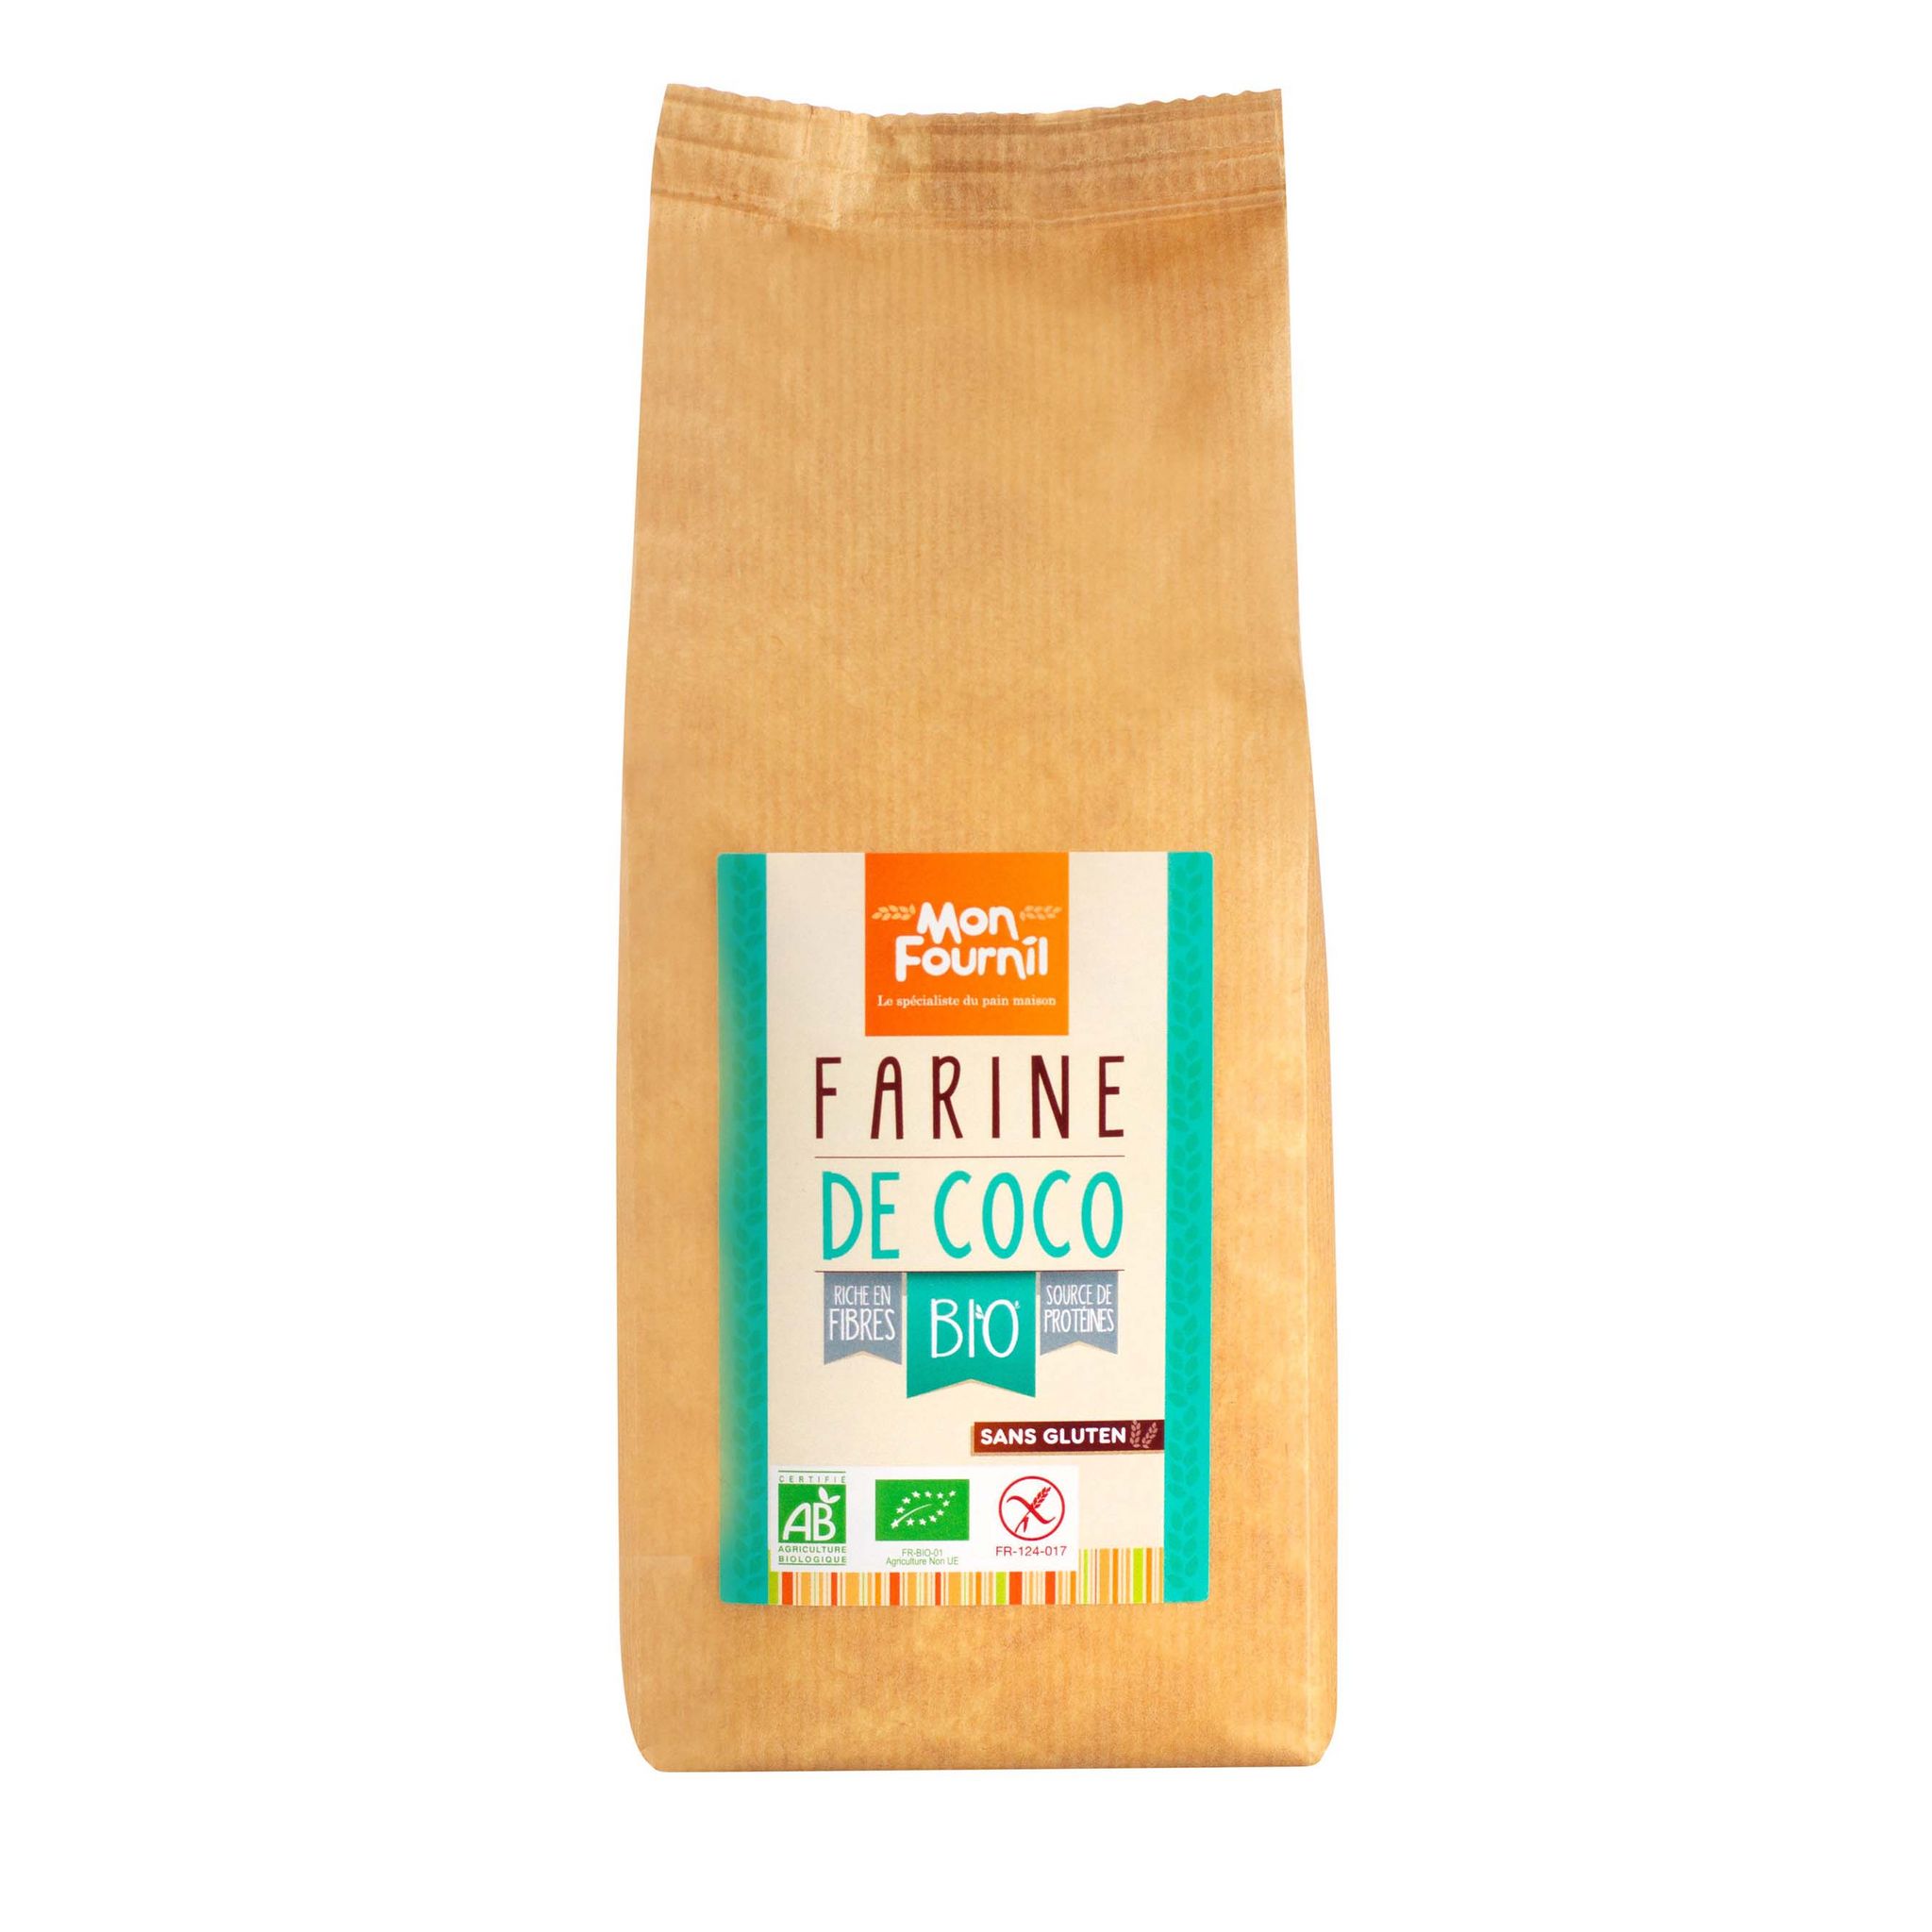 MON FOURNIL Farine de coco bio sans gluten 400g pas cher 